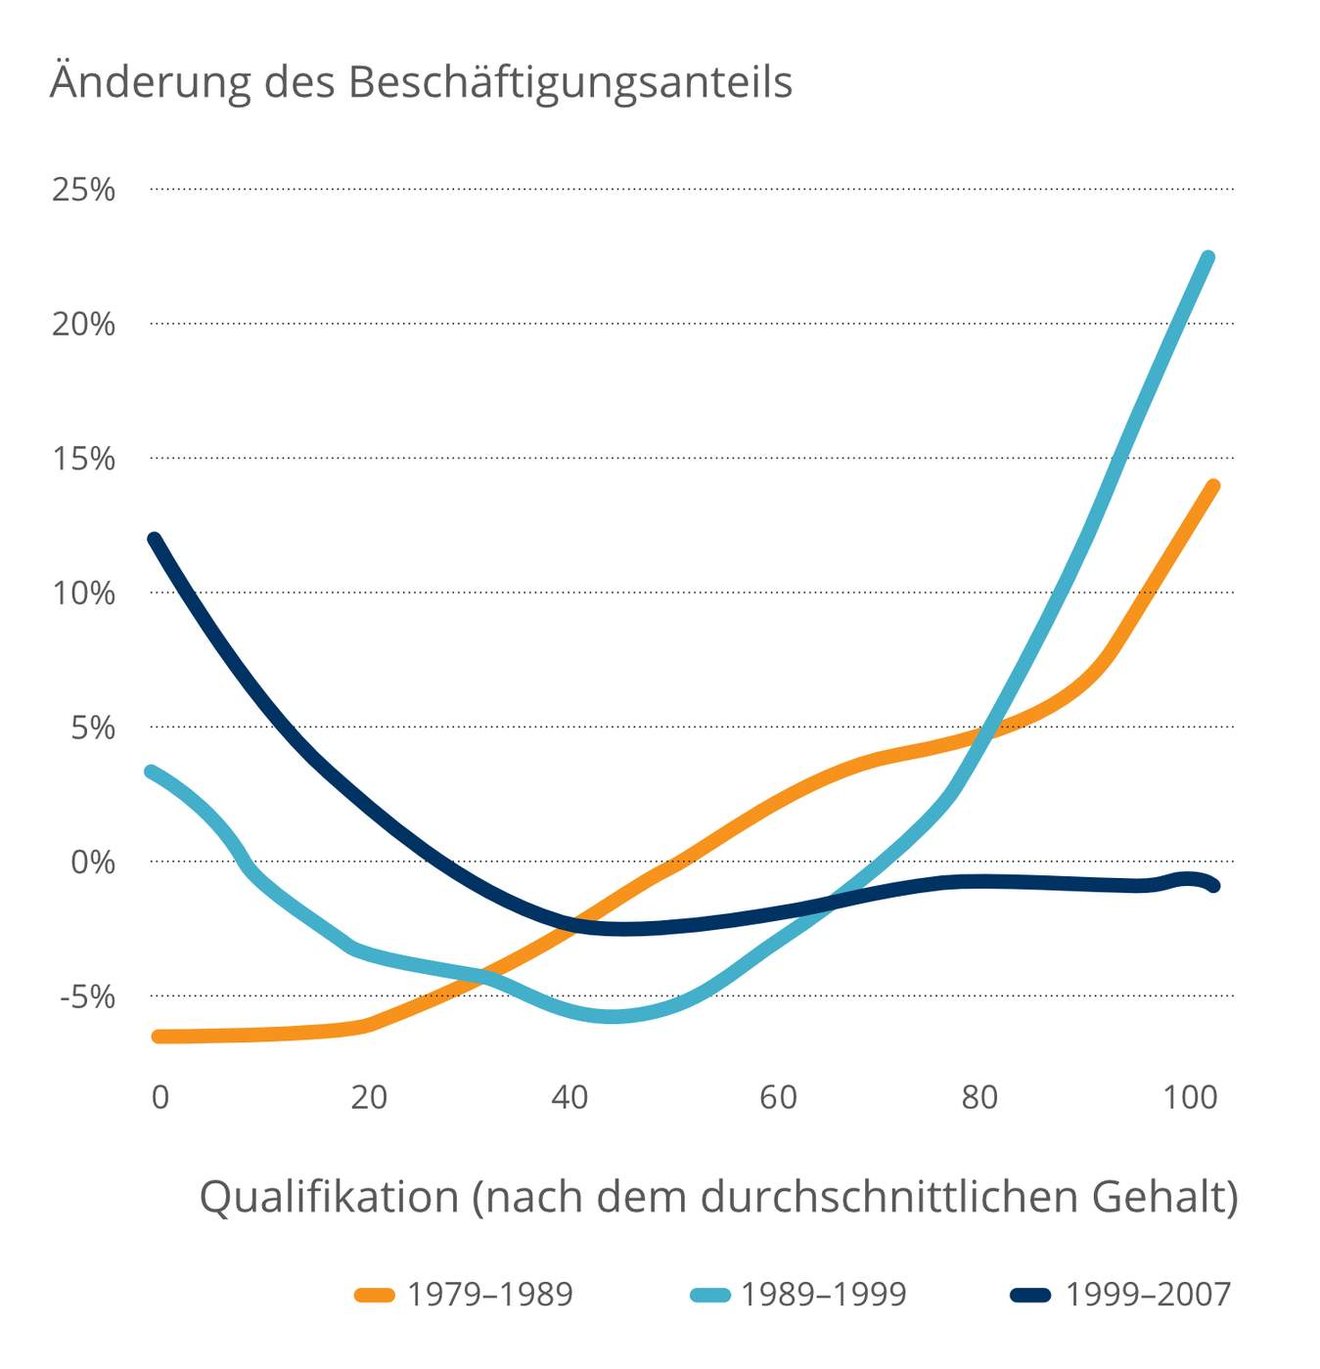 Qualifikation nach dem durchschnittlichen Gehalt zwischen 1979 und 2007